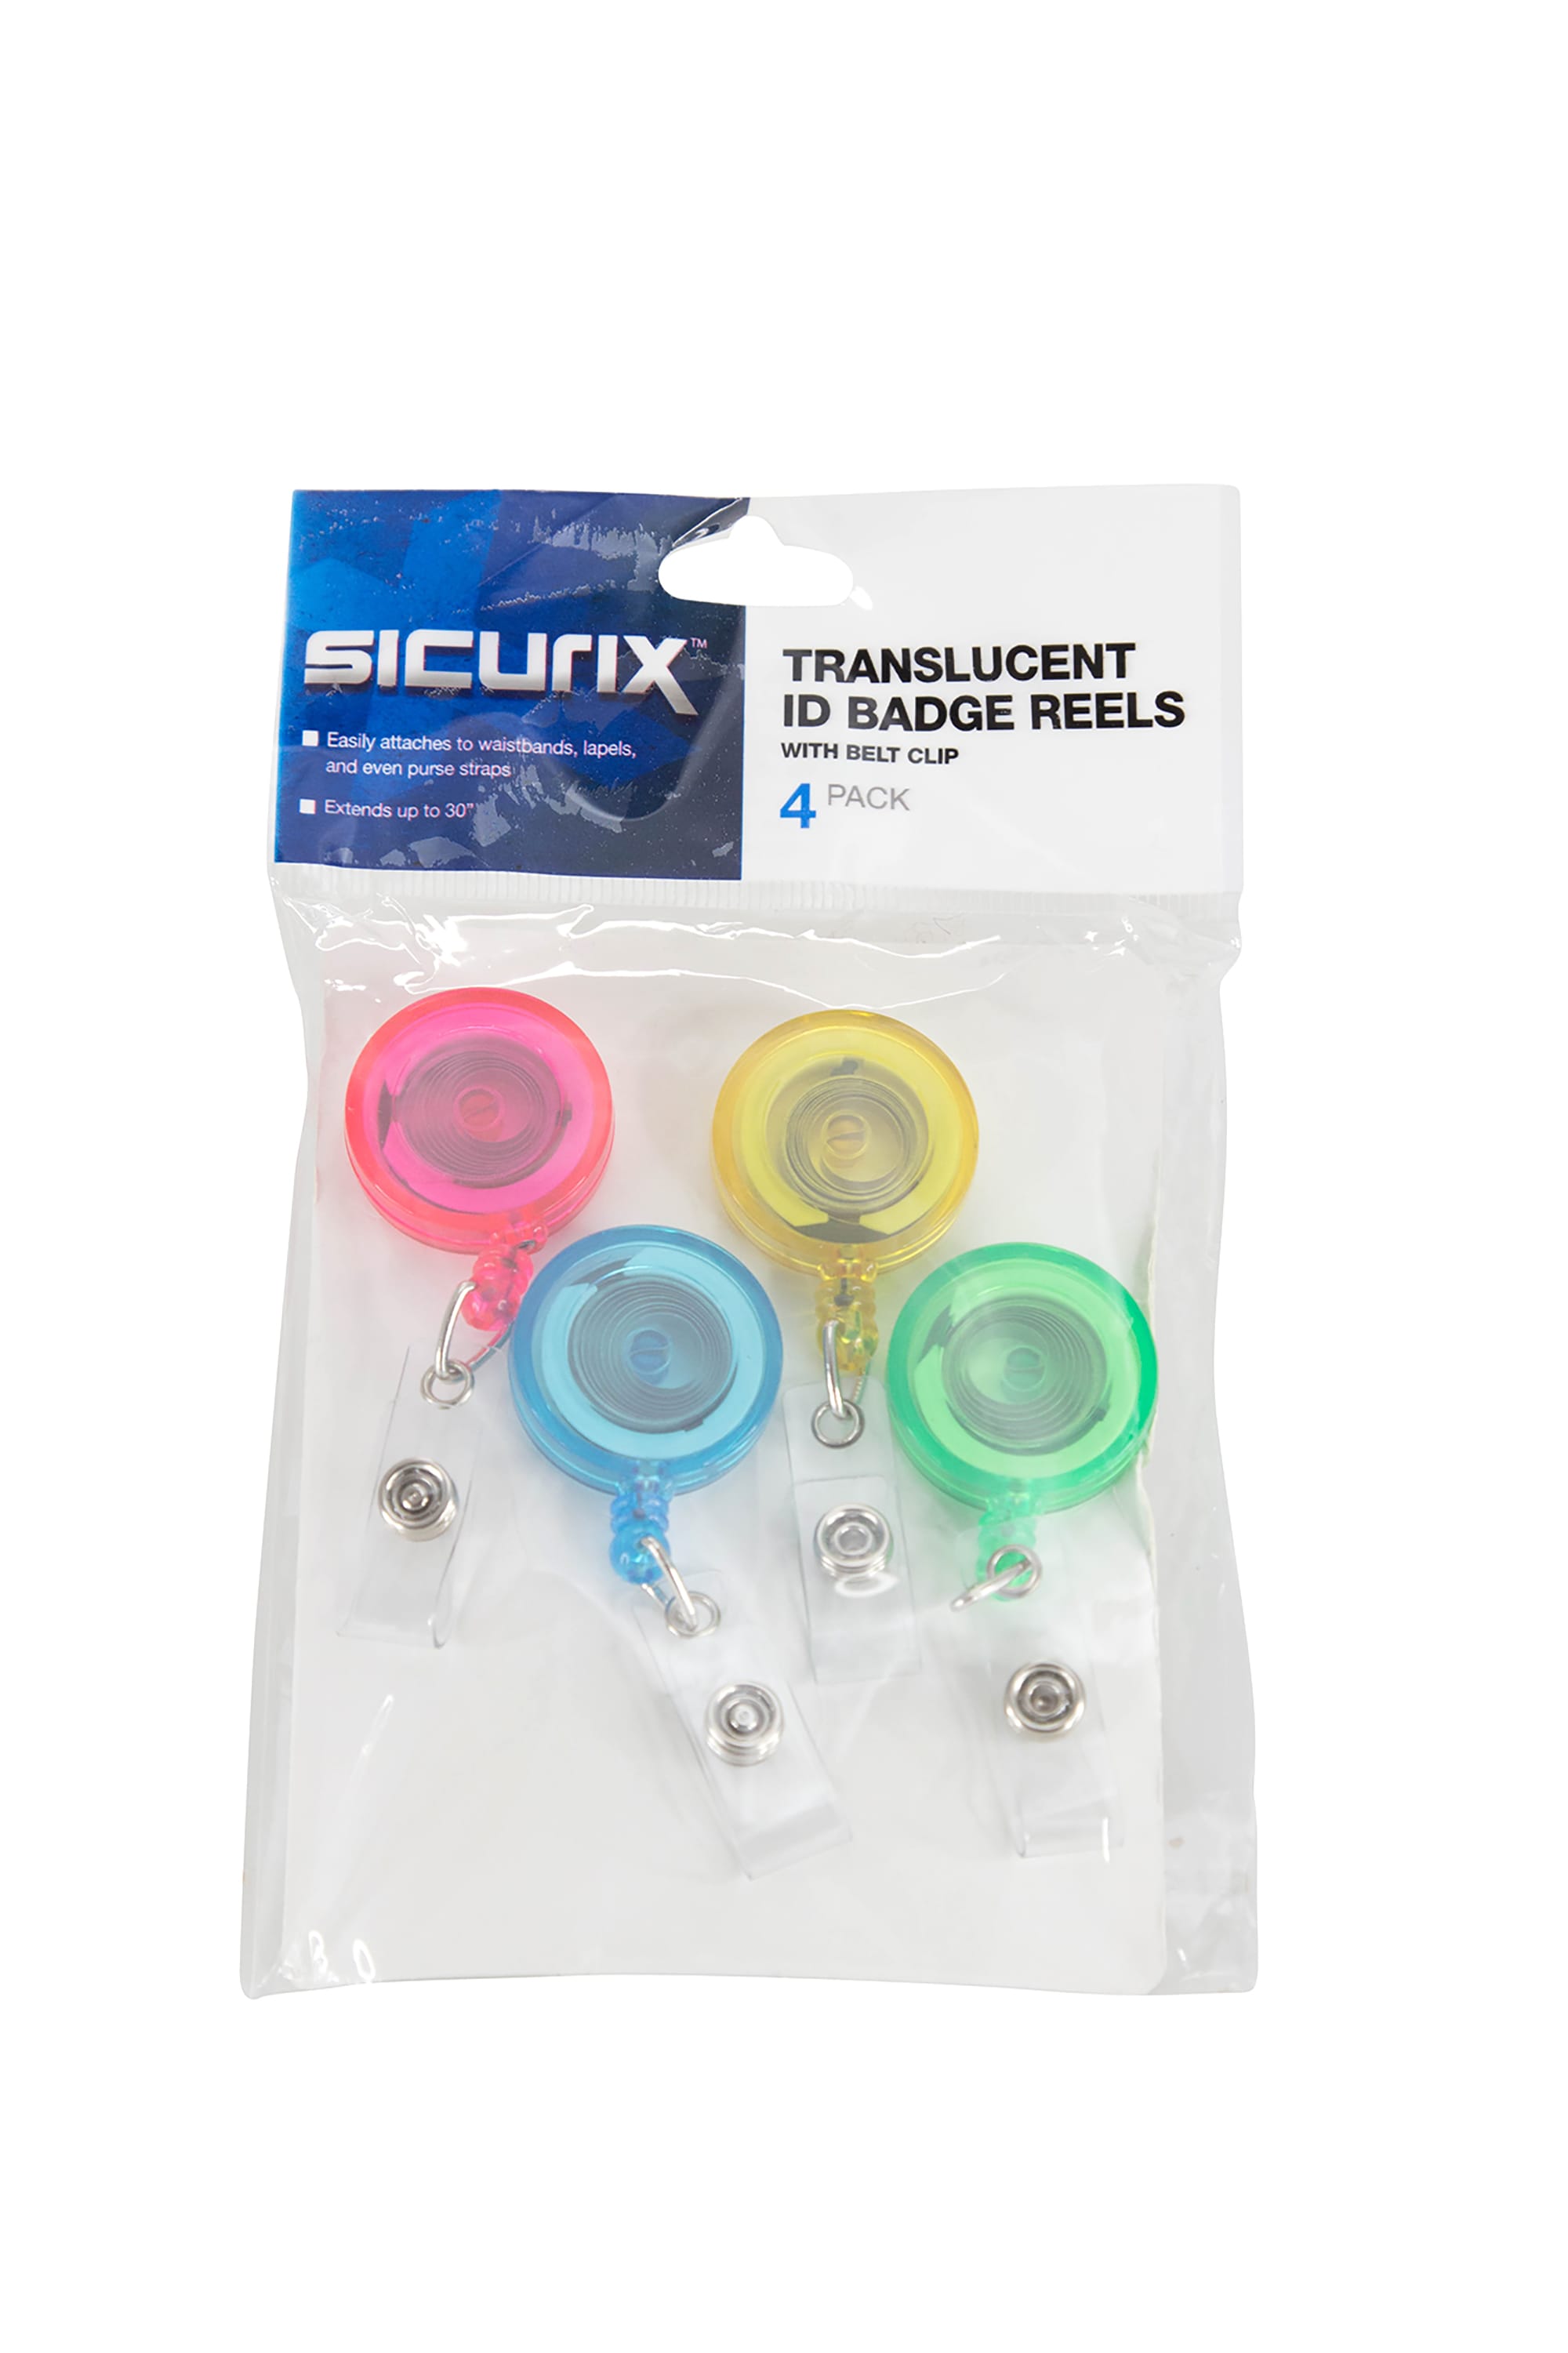 SICURIX Translucent ID Badge Reels Round Belt Clip Strap 4 Pack